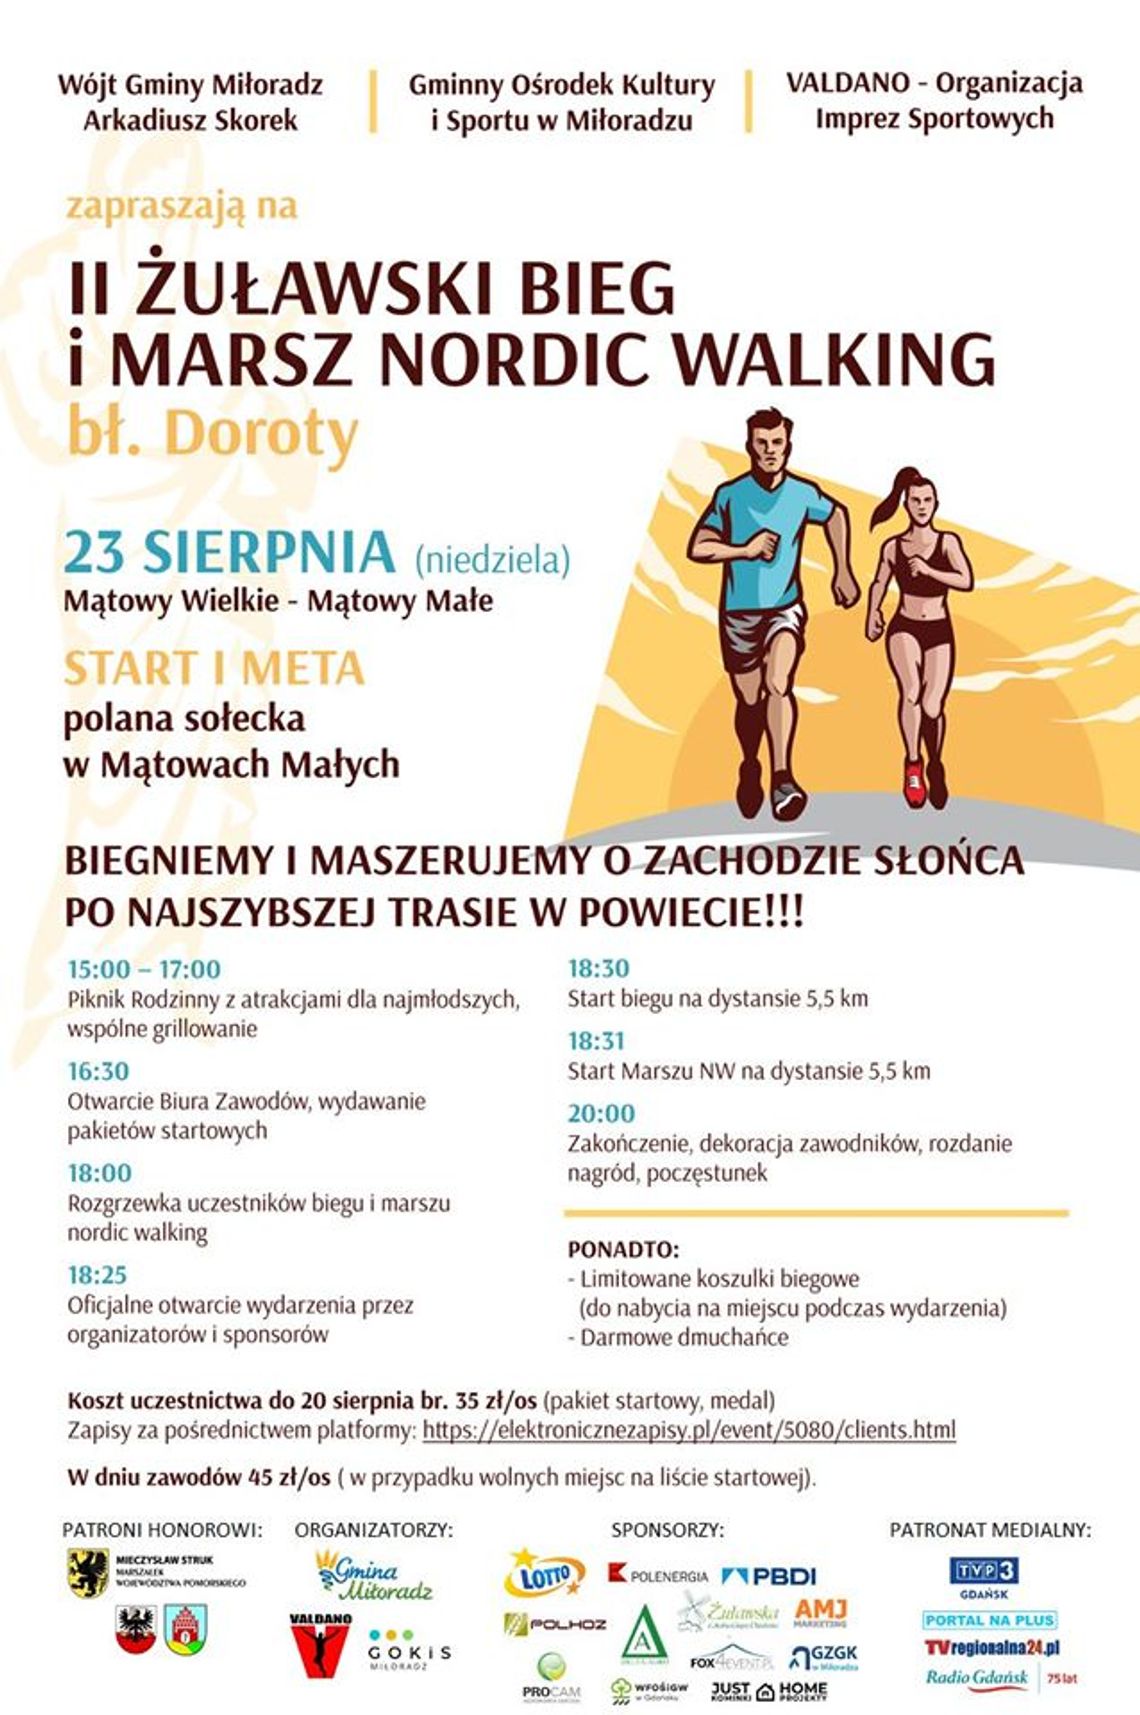  II Żuławski Bieg i Marsz Nordic Walking im. bł. Doroty